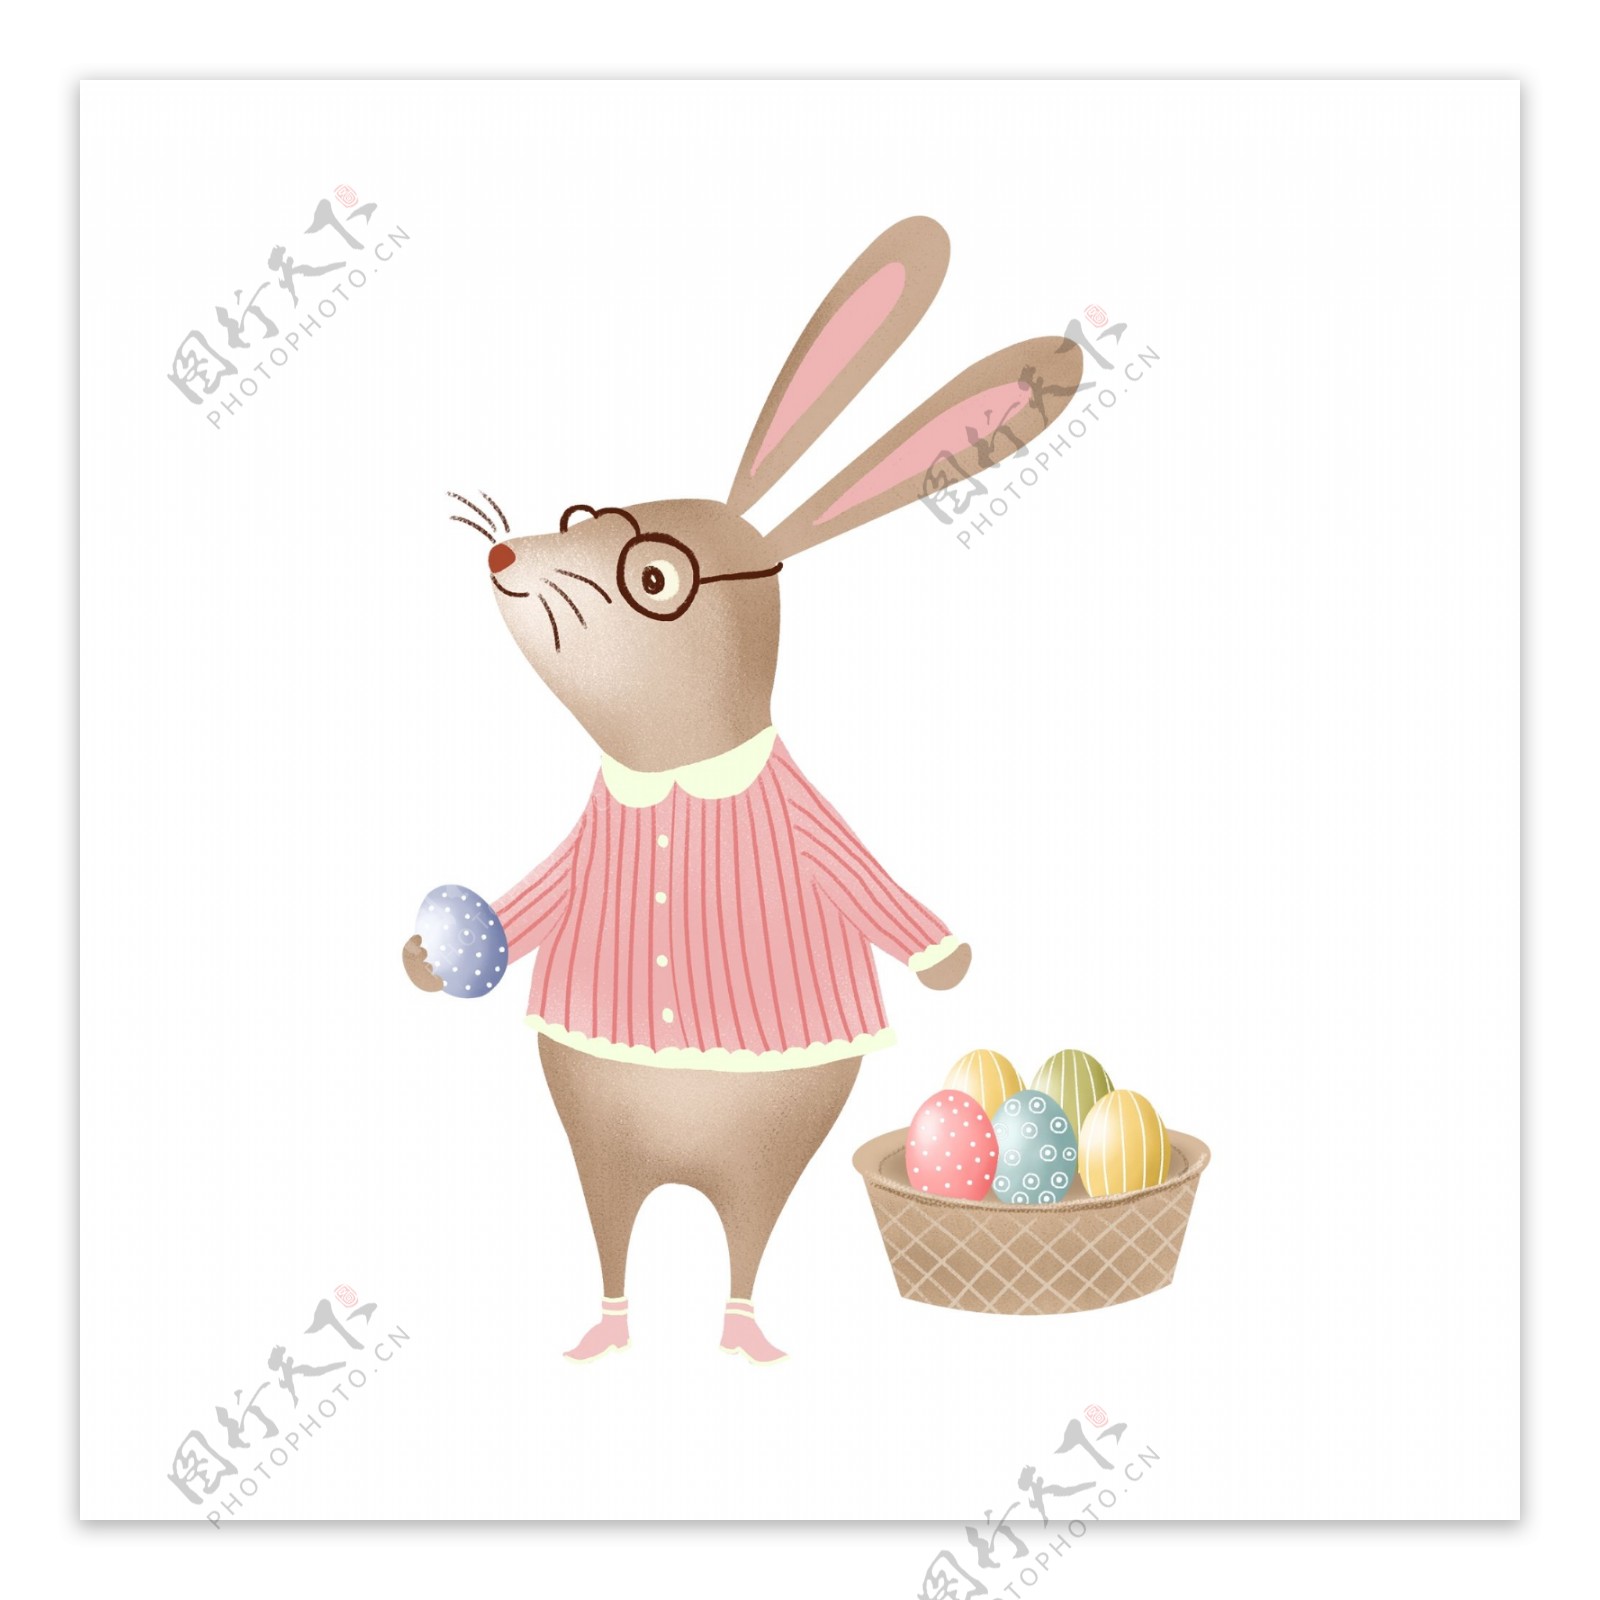 手绘提着一篮子彩蛋的兔子插画设计